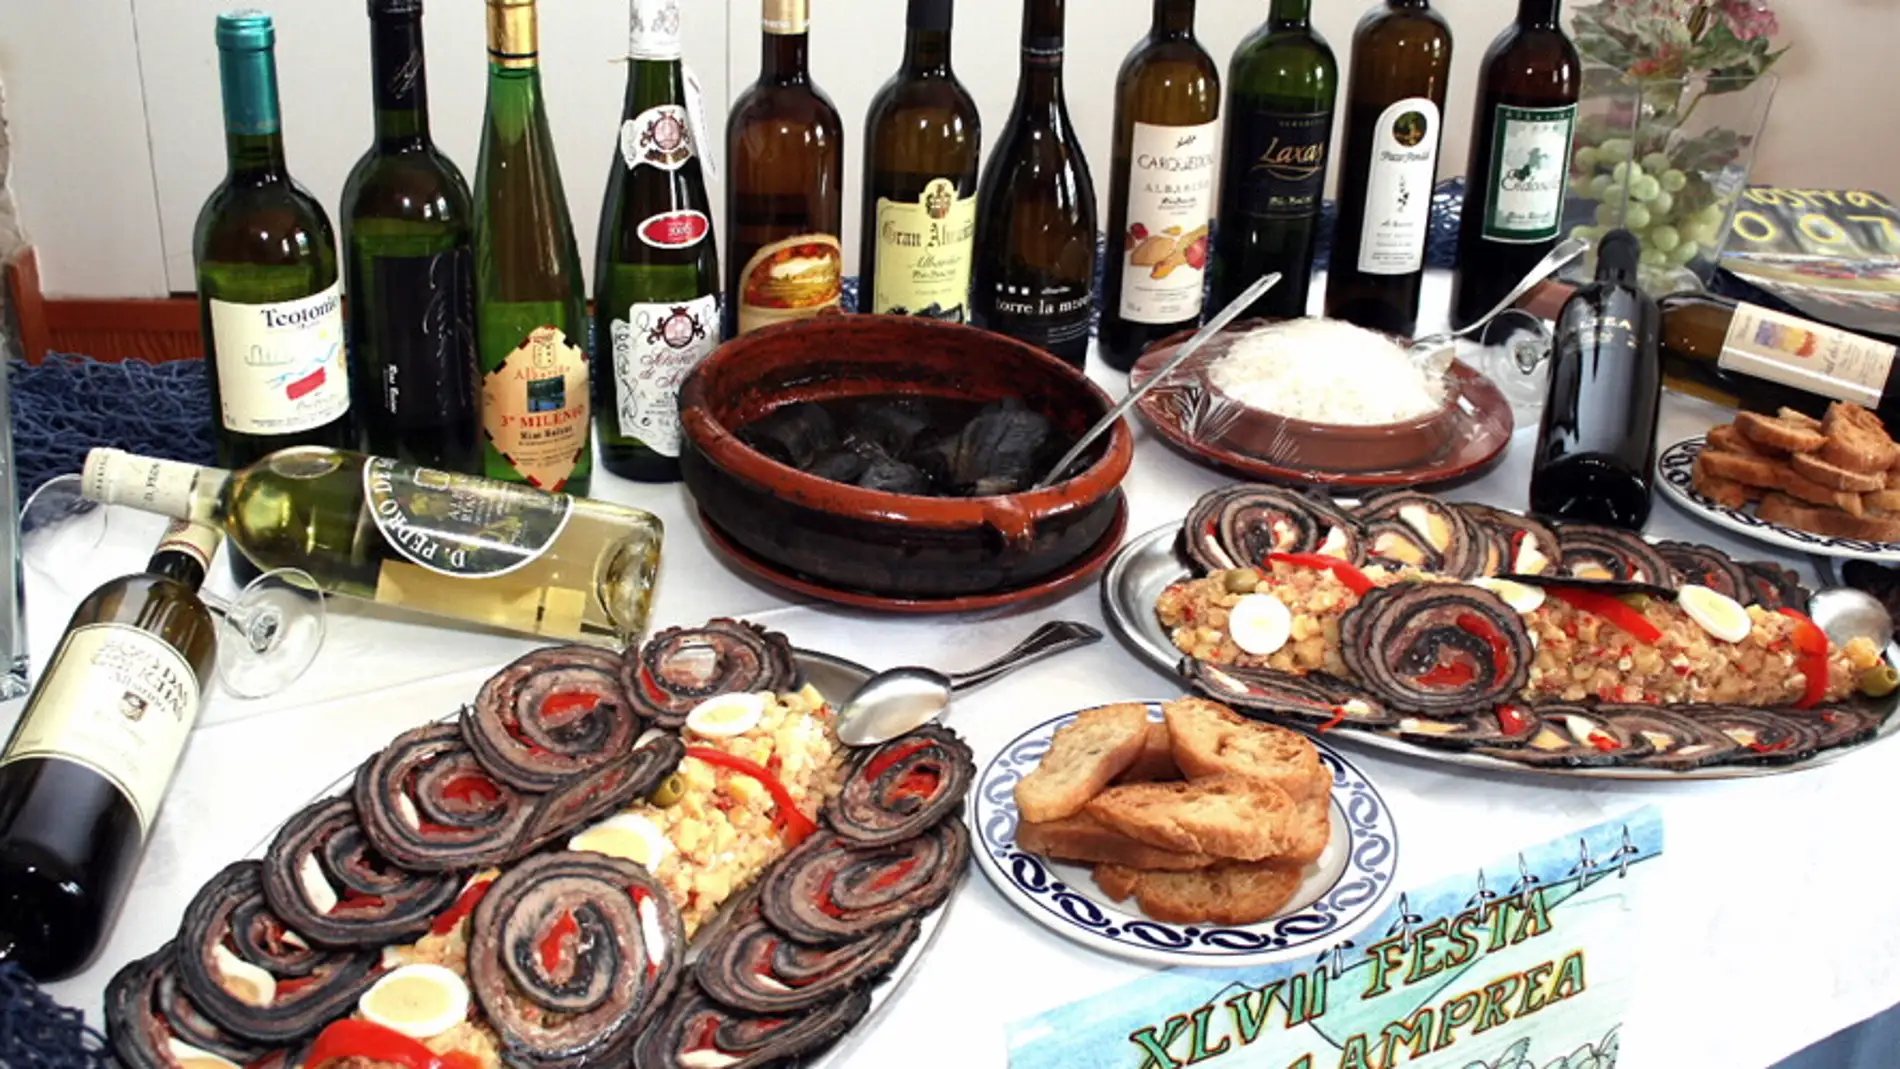 Festa da Lamprea, la fiesta gastronómica más antigua de Galicia